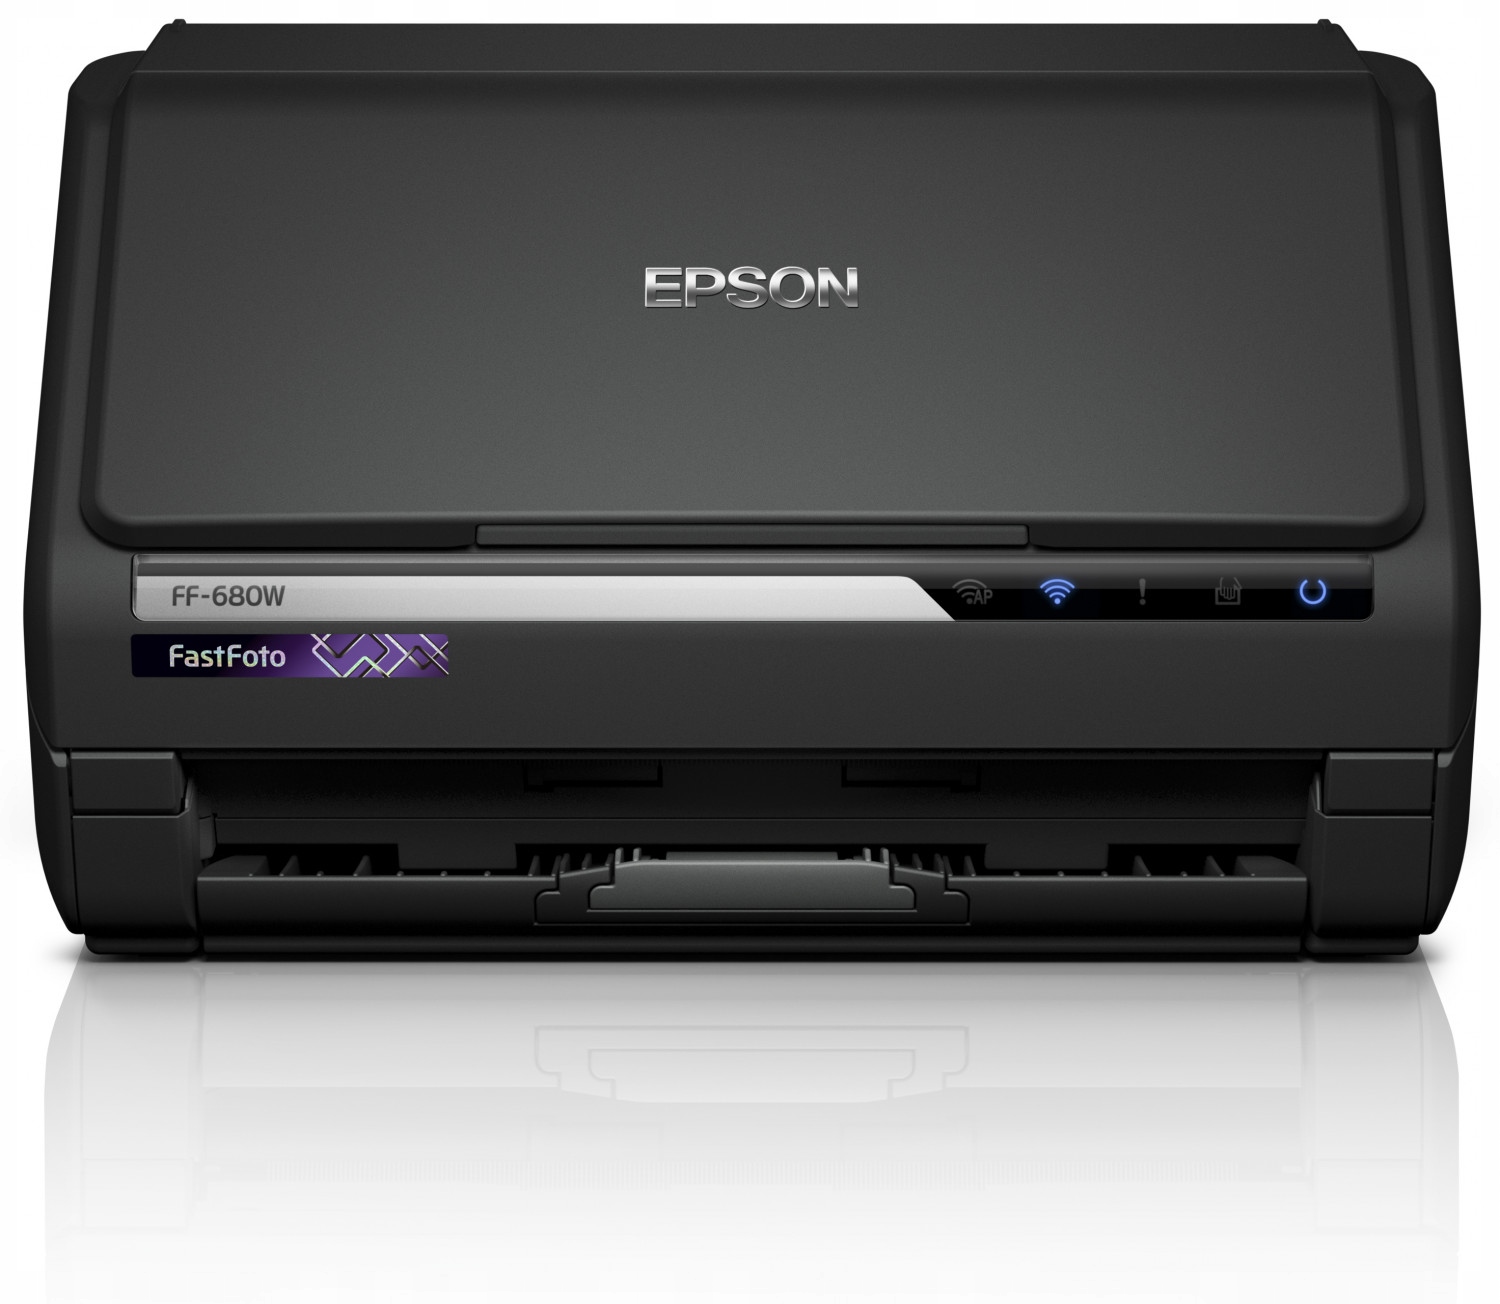 Код виробника сканера EPSON FastFoto FF-680W B11B237401